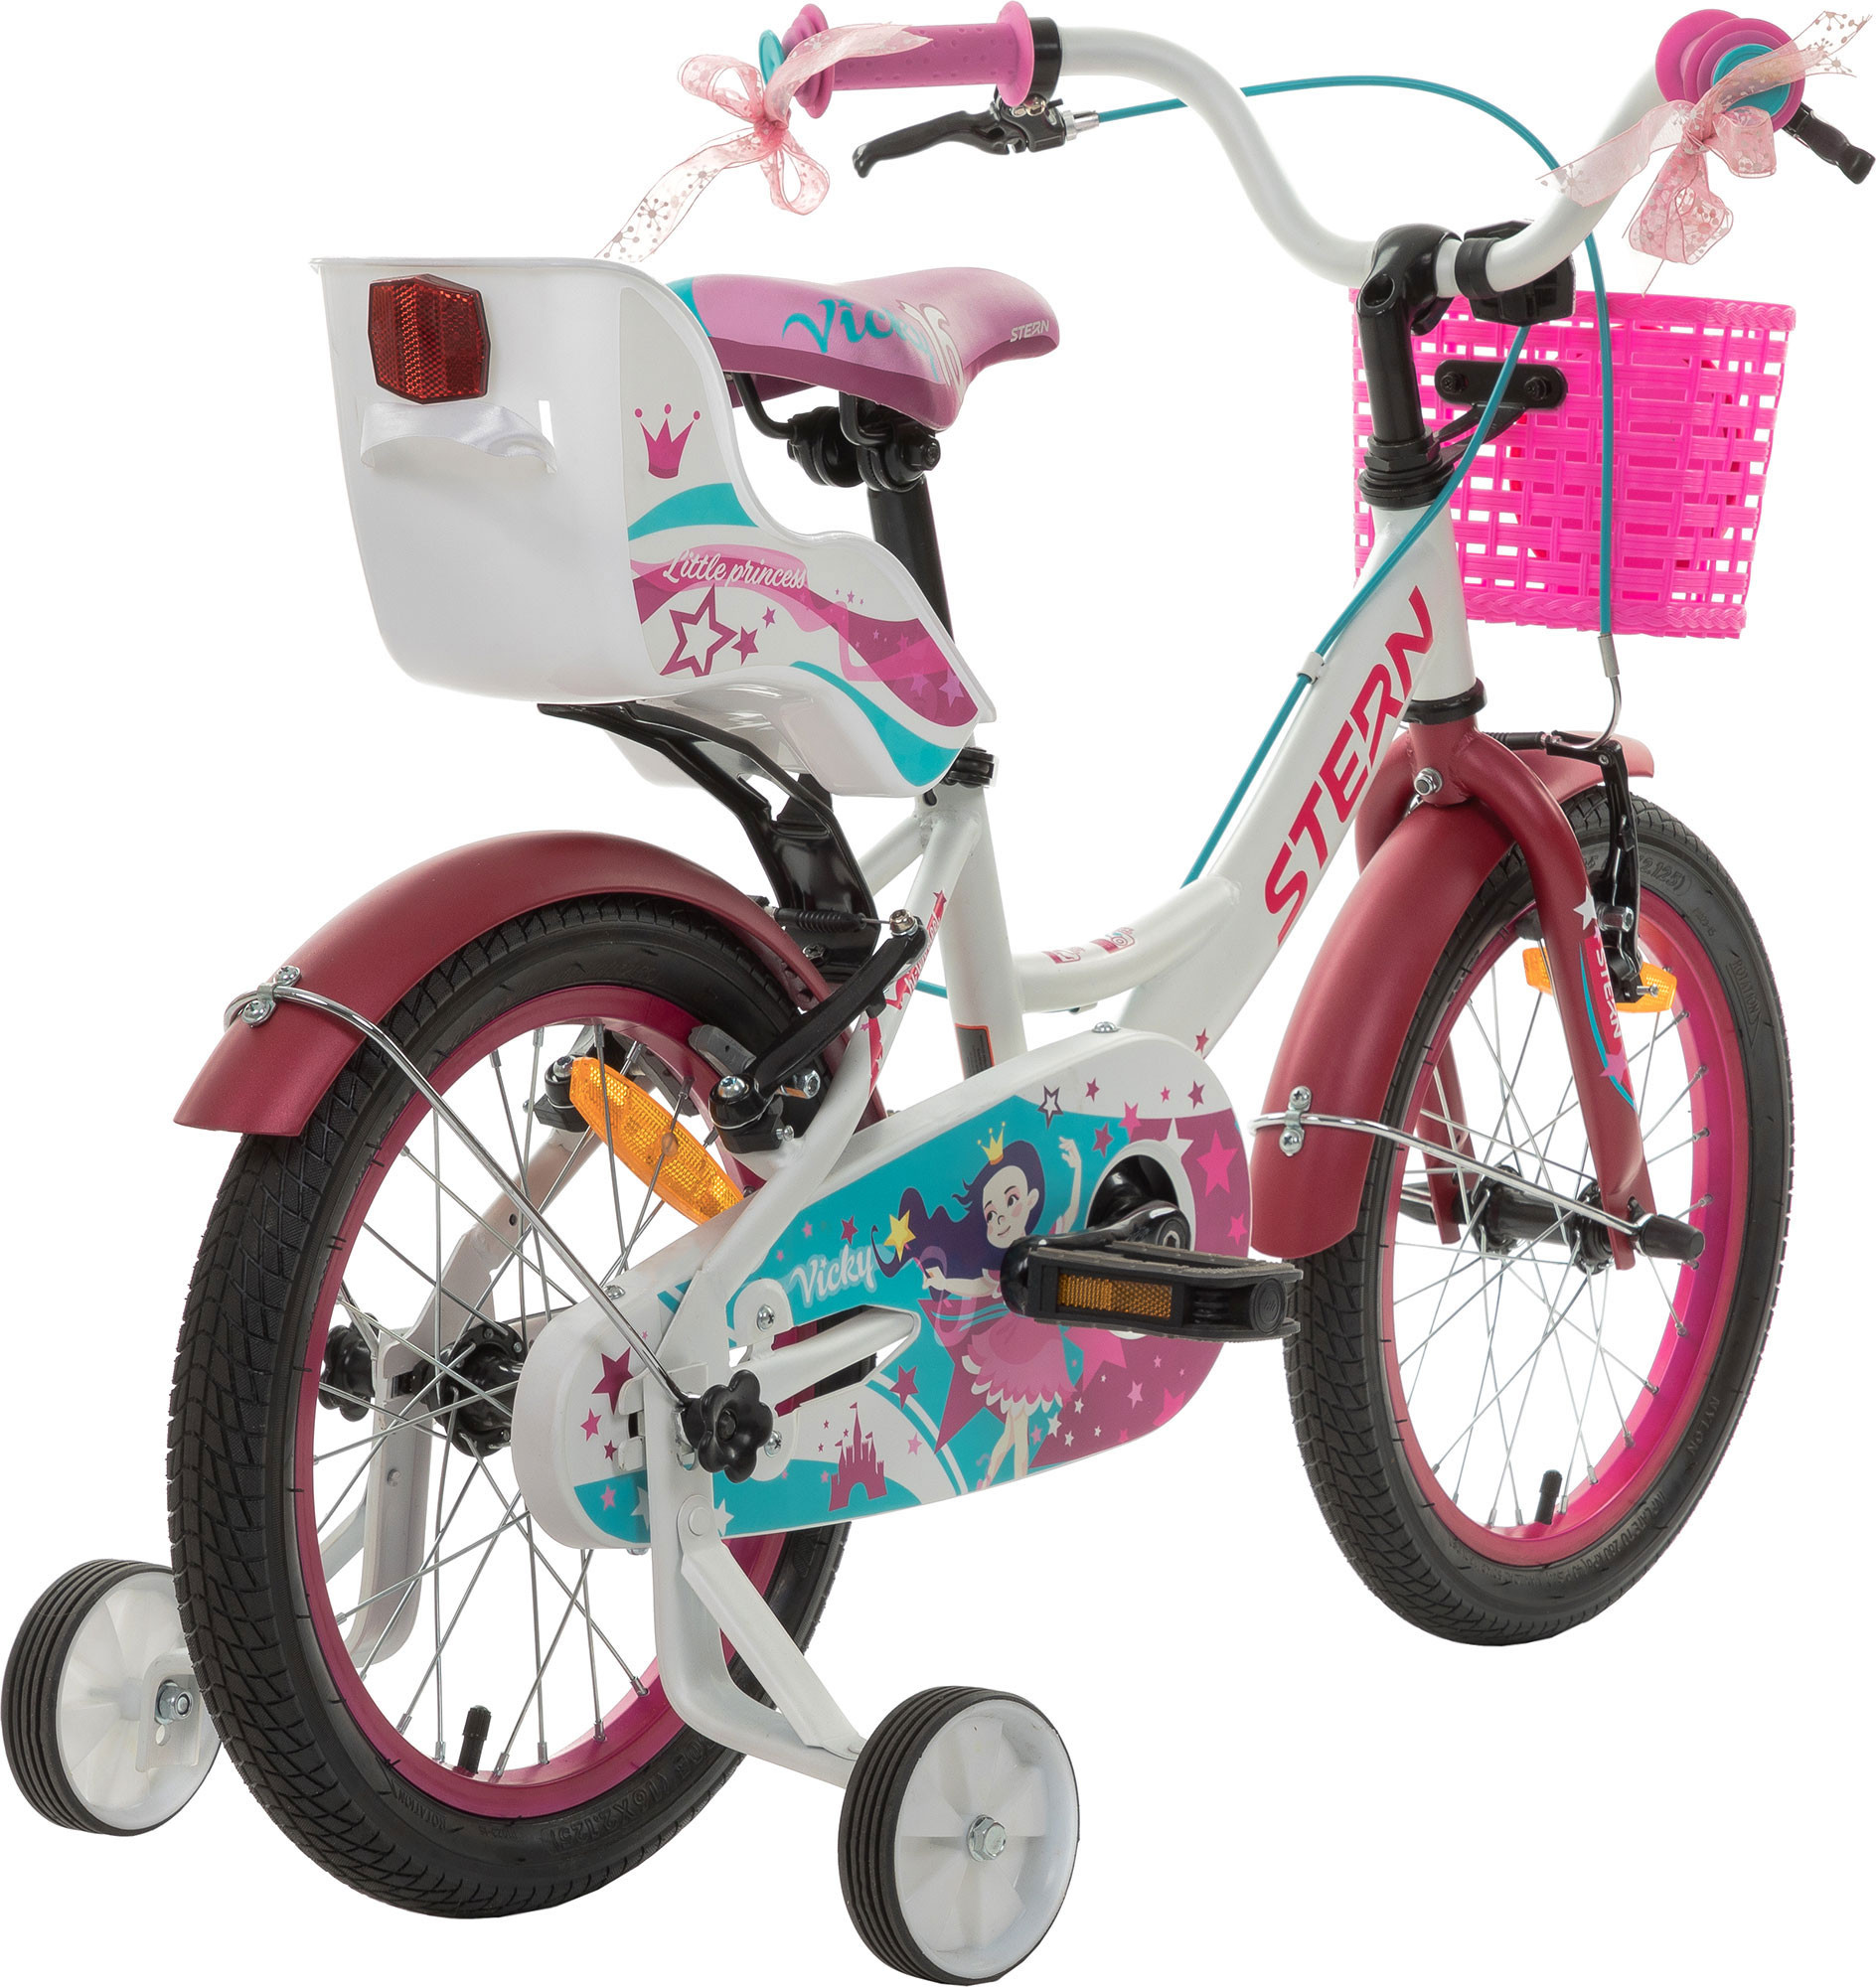 "Велосипед для дівчаток Stern Vicky 16 16"""